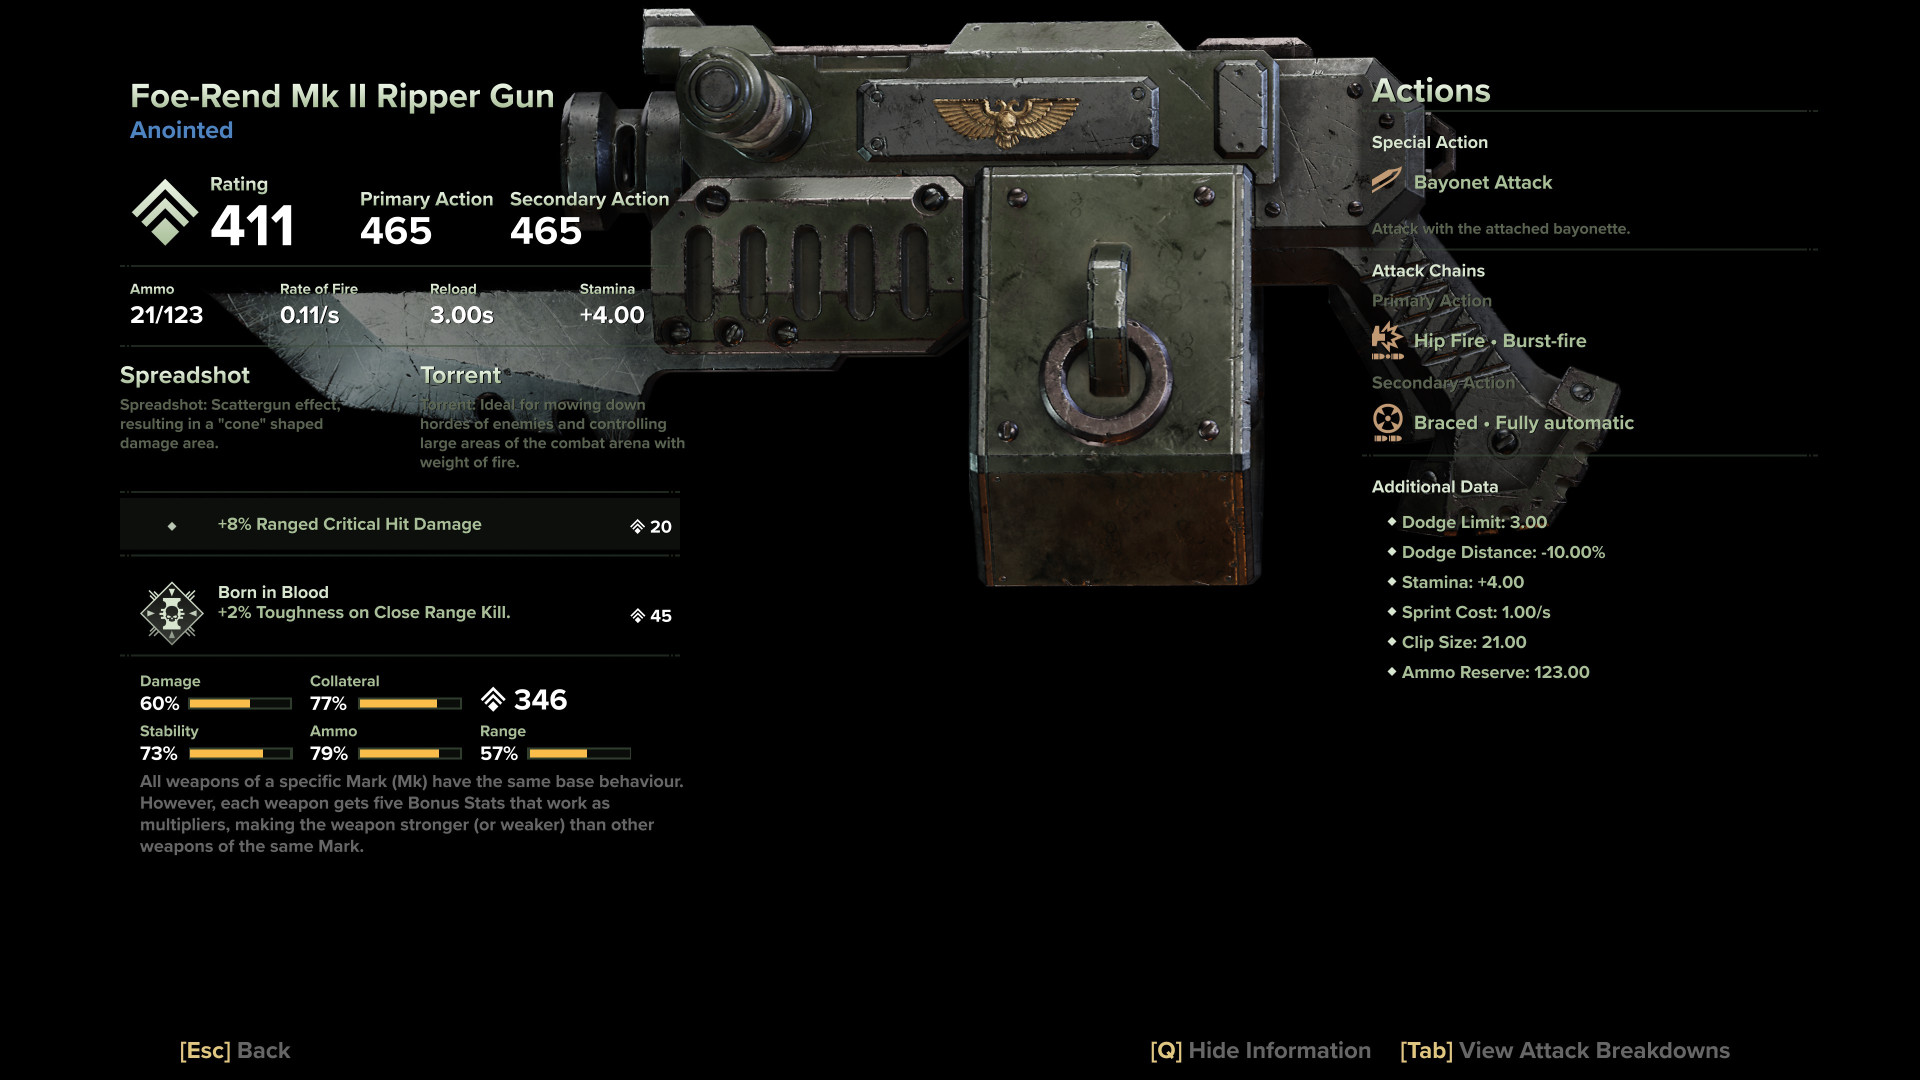 Foe-Rend Mk II Ripper Gun